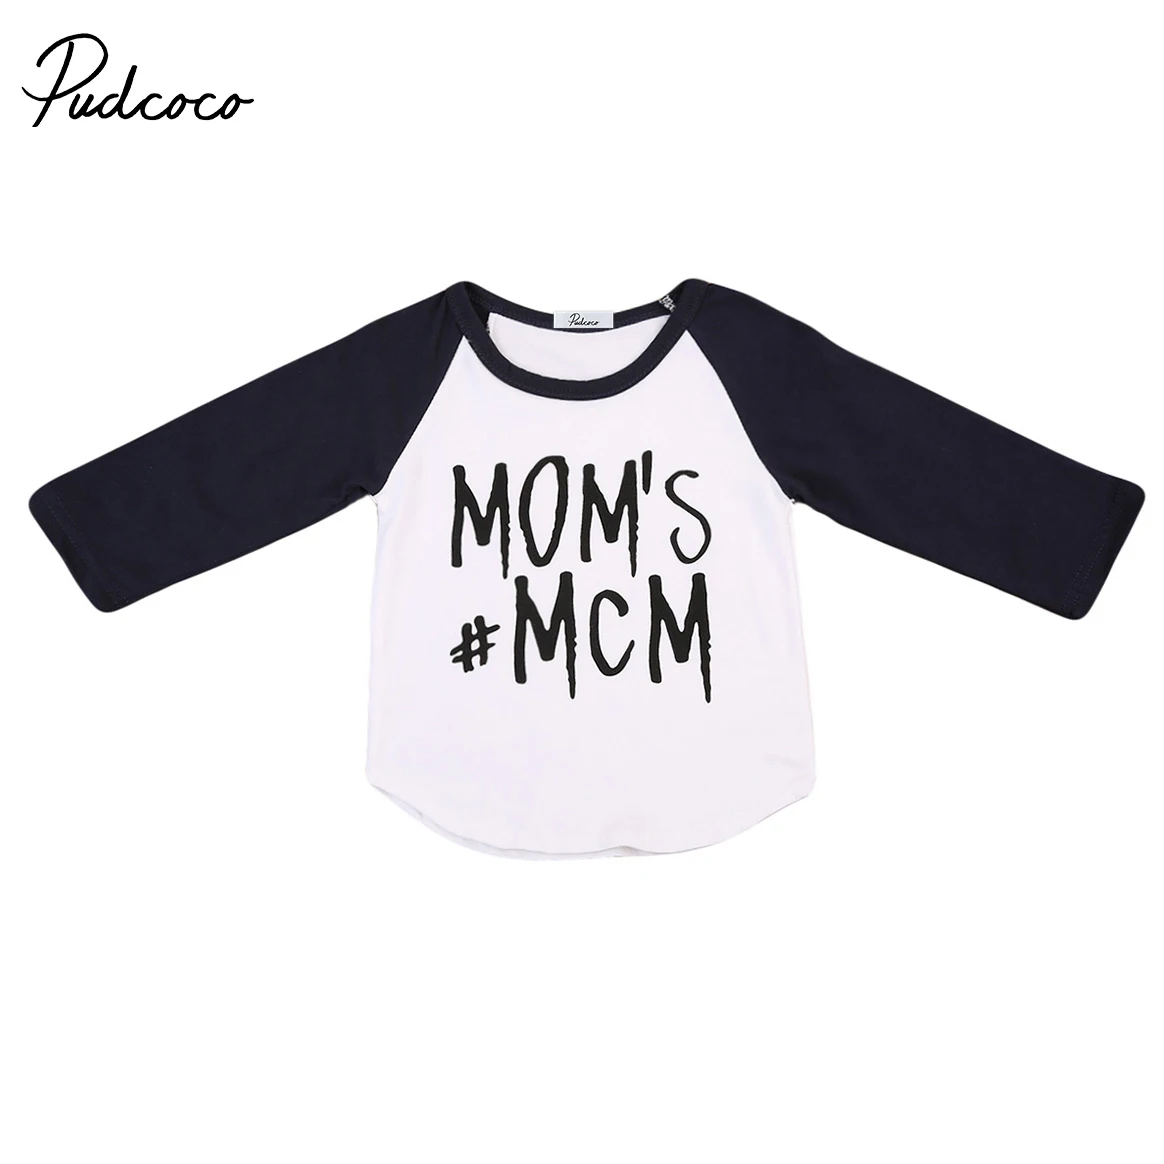 Pudcoco для маленьких мальчиков мамы MCM футболки Дети Новая Осенняя хлопковая футболка с длинными рукавами наряды одежда